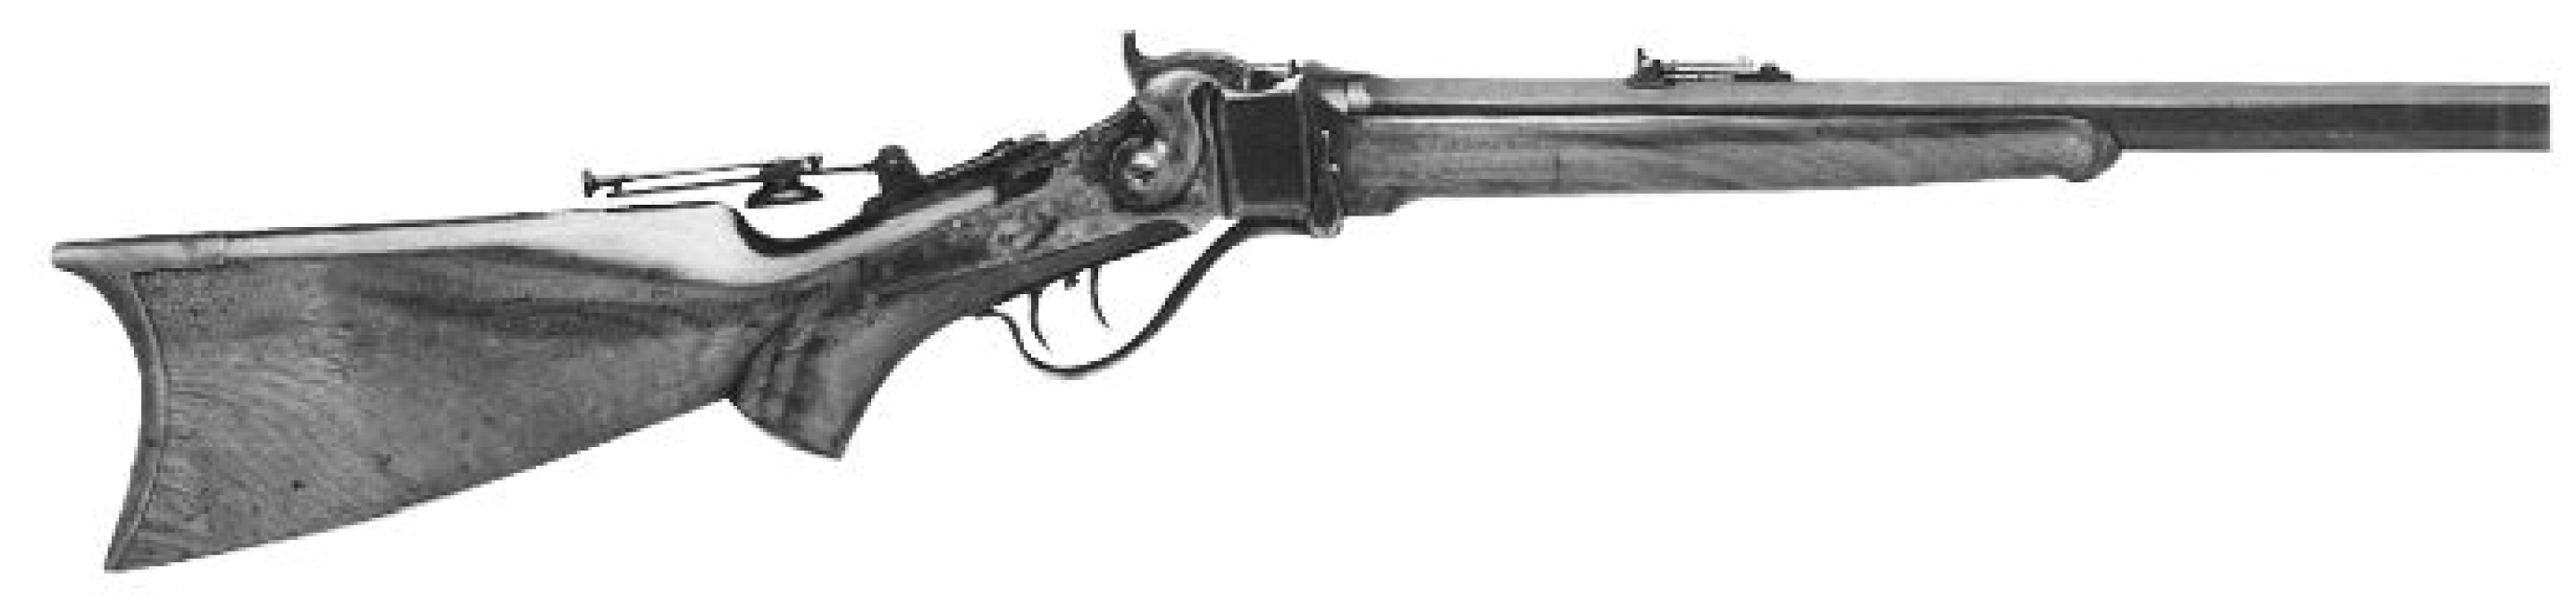 Schuetzen Rifle